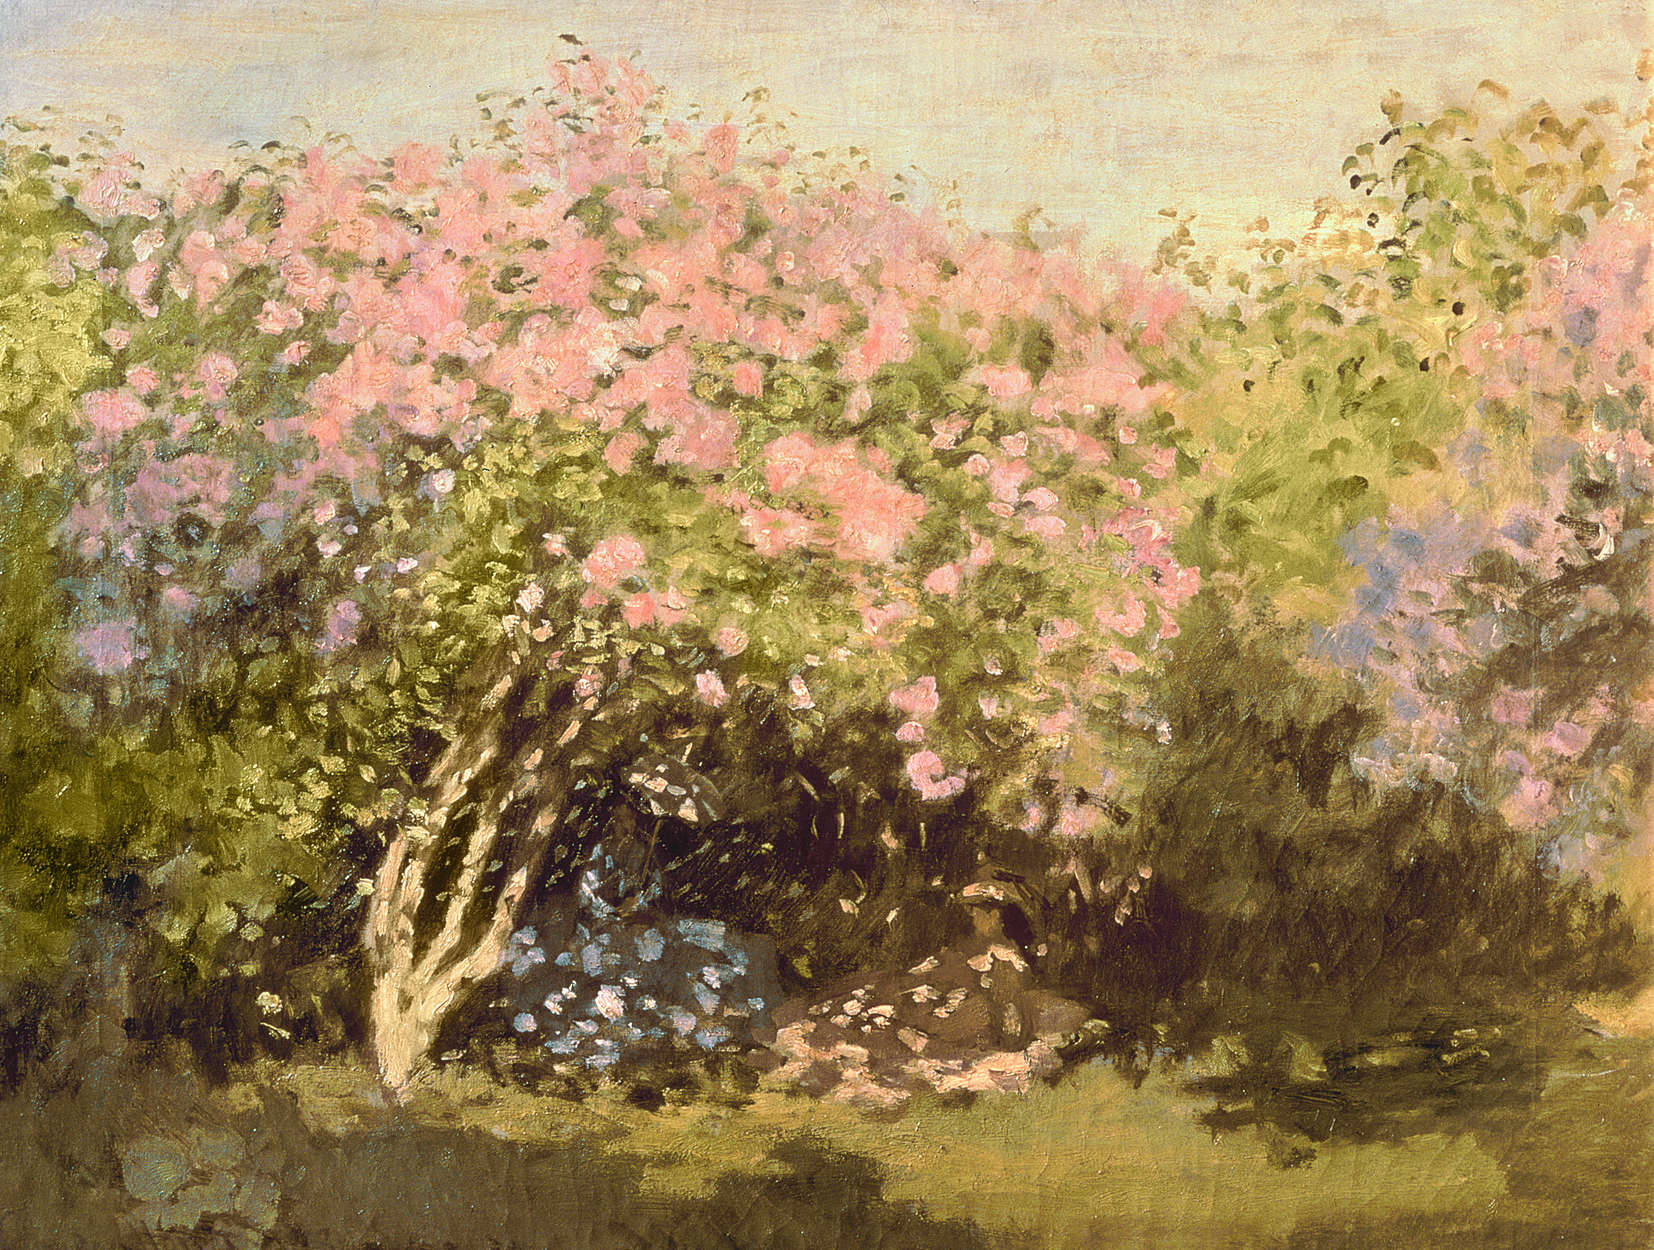             Mural "Lilas en flor al sol" de Claude Monet
        